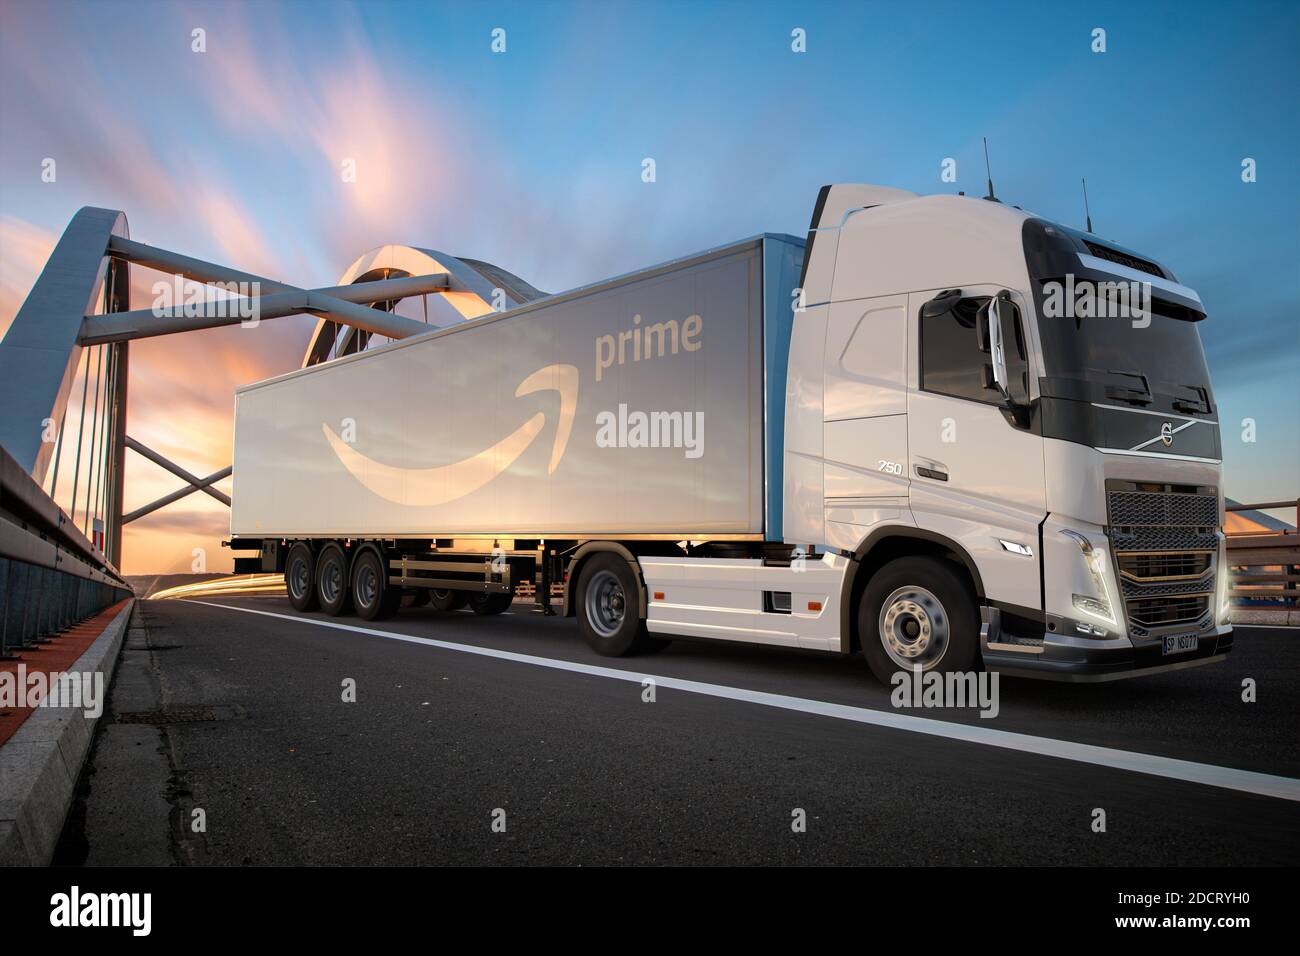 Camion volvo immagini e fotografie stock ad alta risoluzione - Alamy